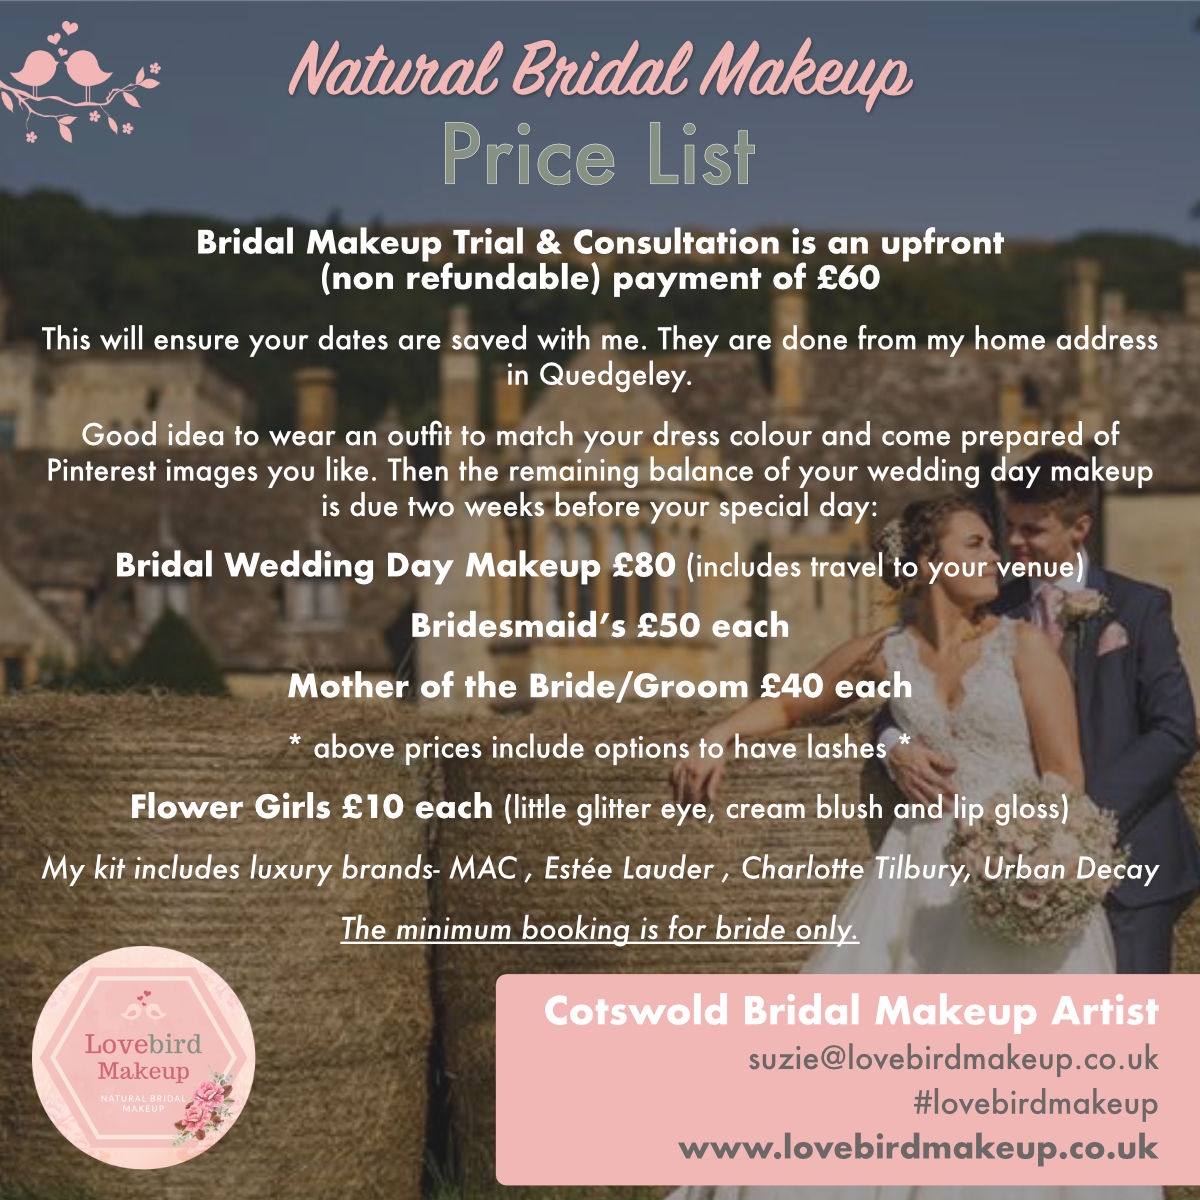 Natural Bridal Makeup - Price List